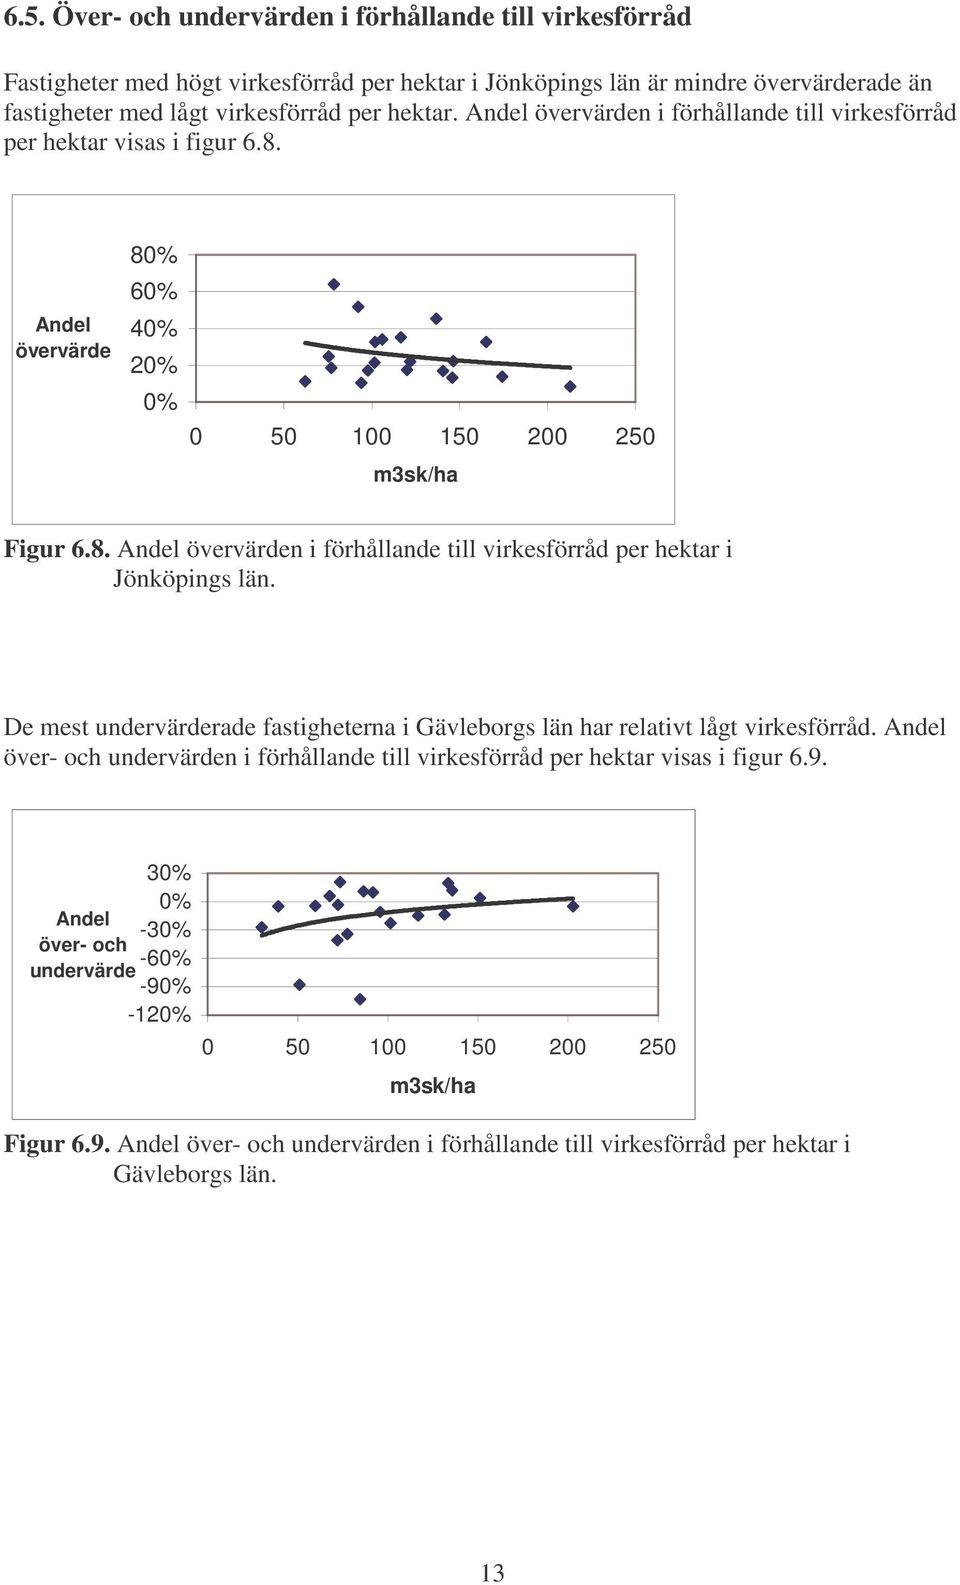 De mest undervärderade fastigheterna i Gävleborgs län har relativt lågt virkesförråd. Andel över- och undervärden i förhållande till virkesförråd per hektar visas i figur 6.9.